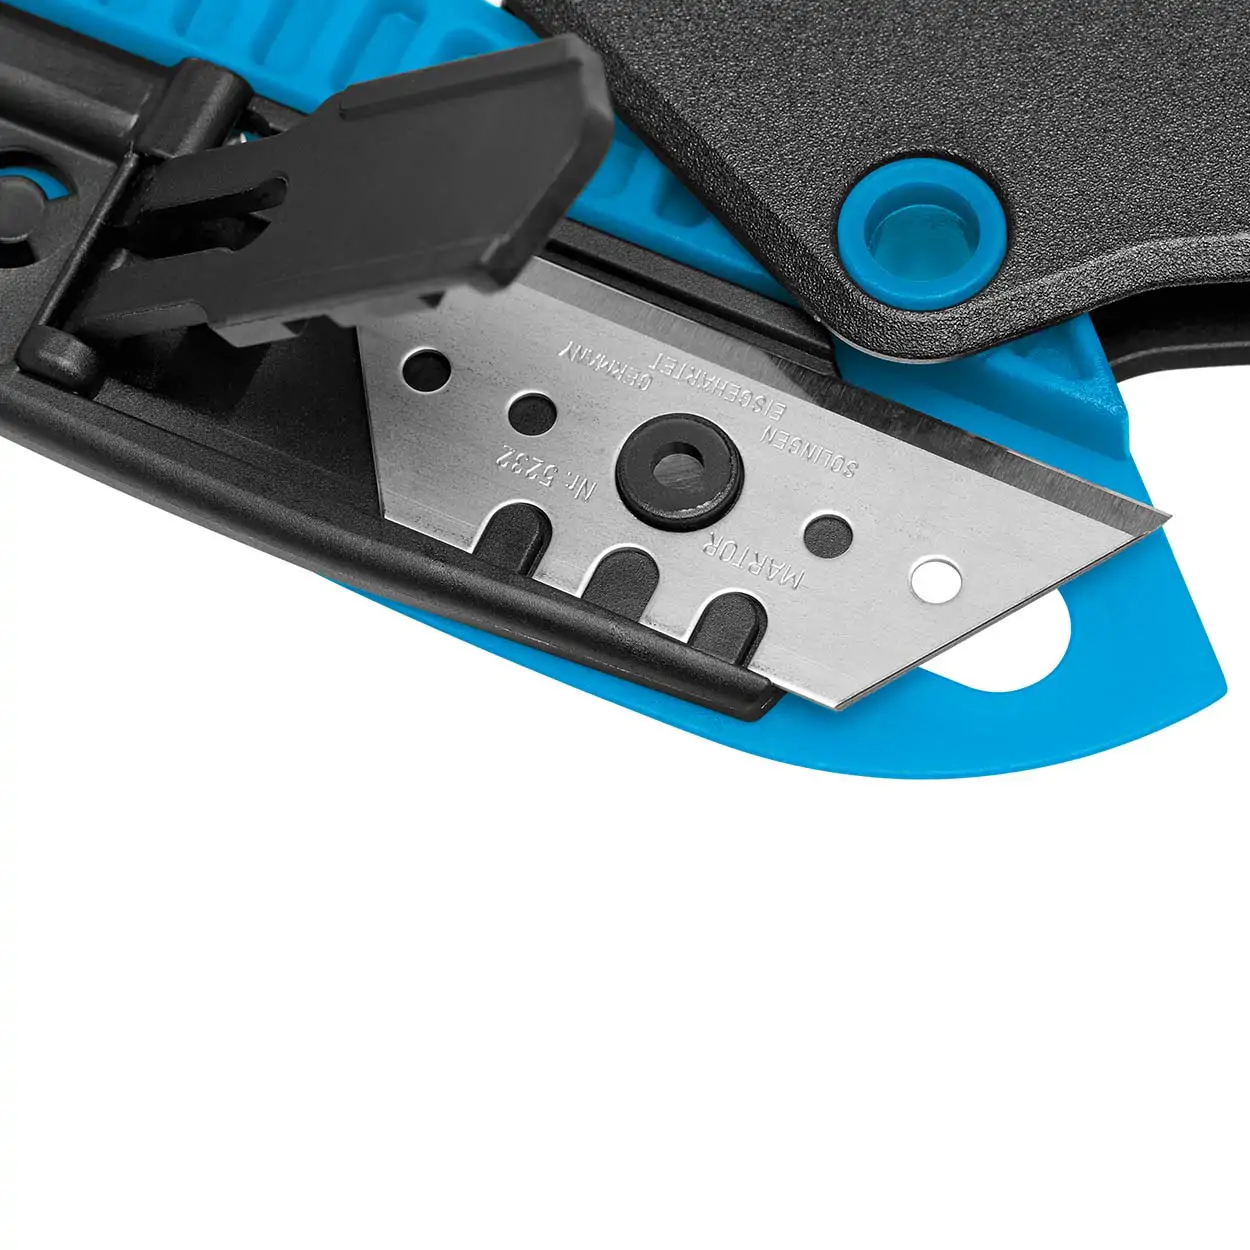 SECUNORM MIZAR - Lekki bezpieczny nóż z mechanizmem dźwignio